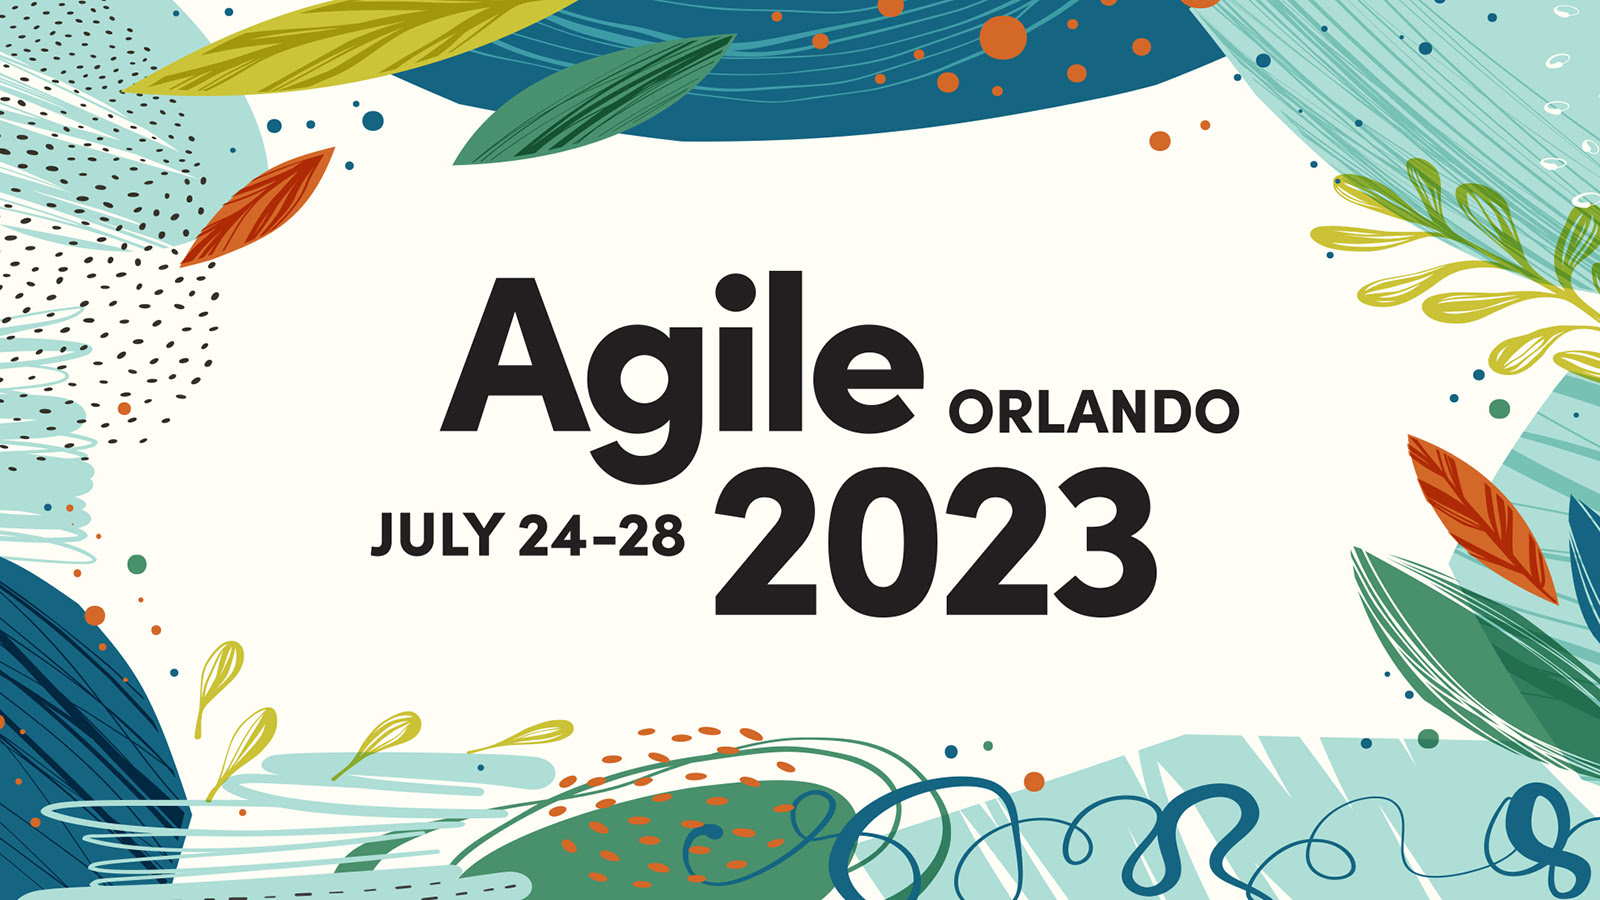 Agile2023 Orlando